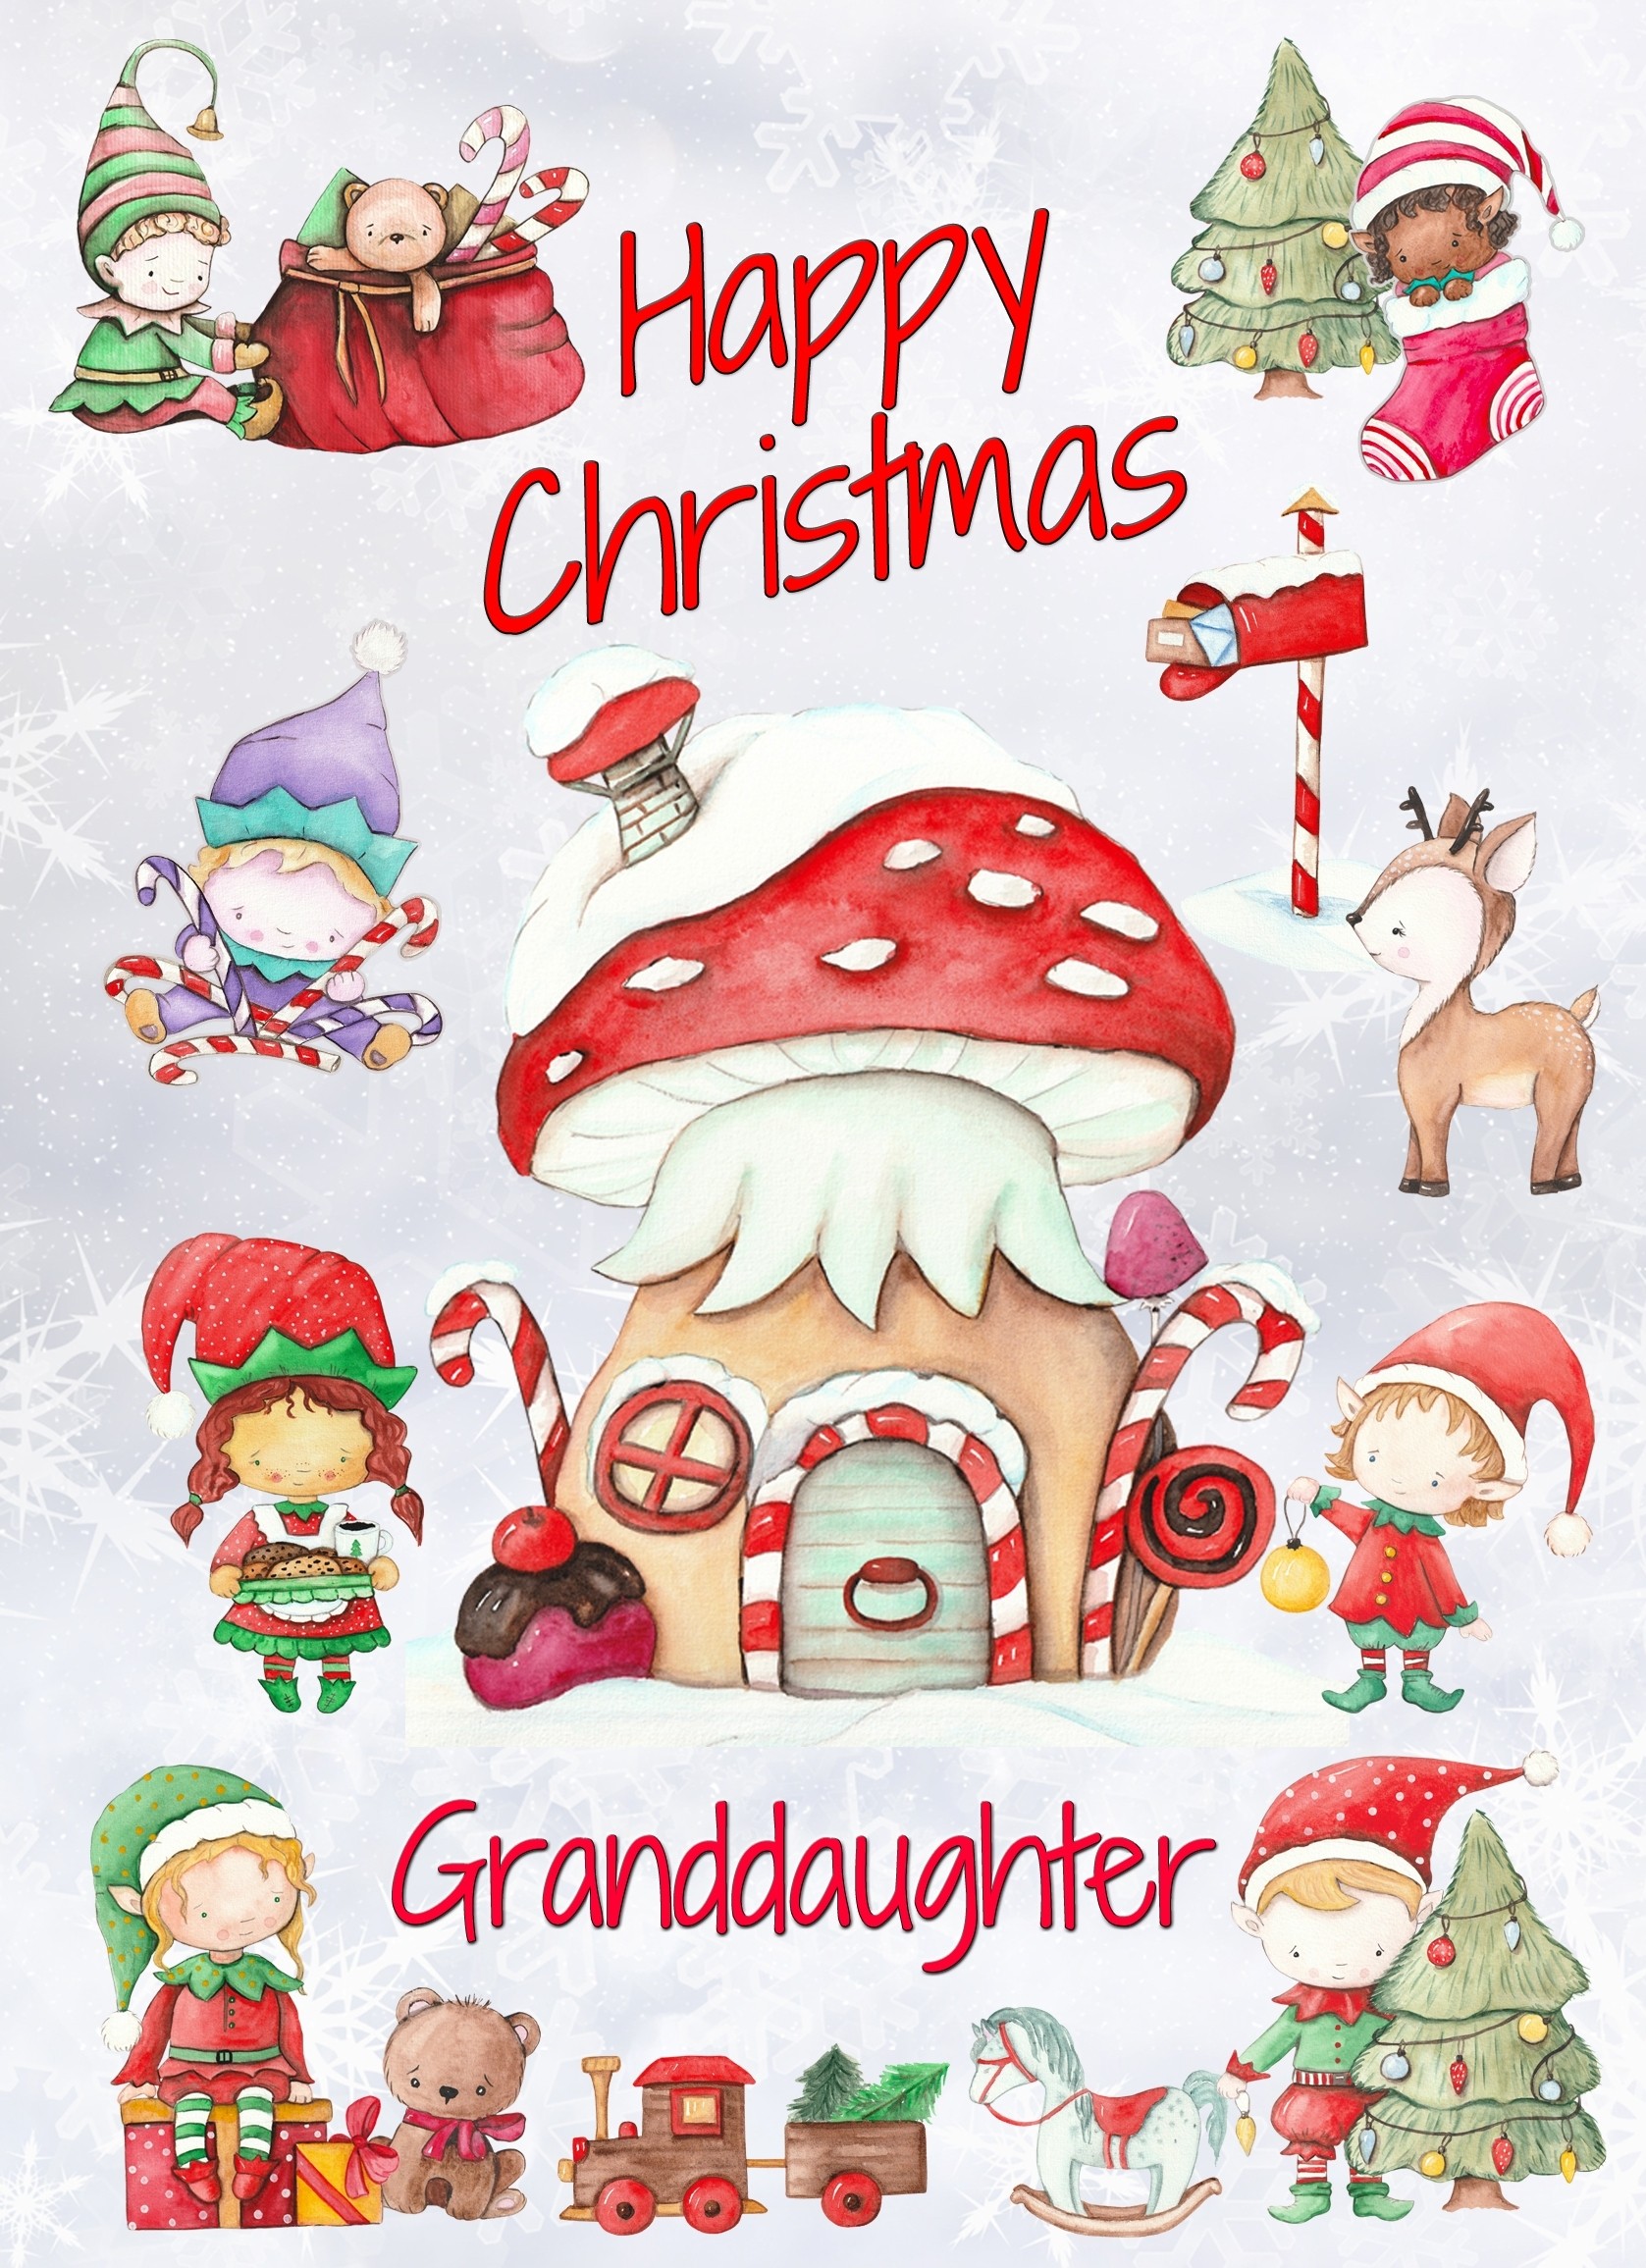 Christmas Card For Granddaughter (Elf, White)